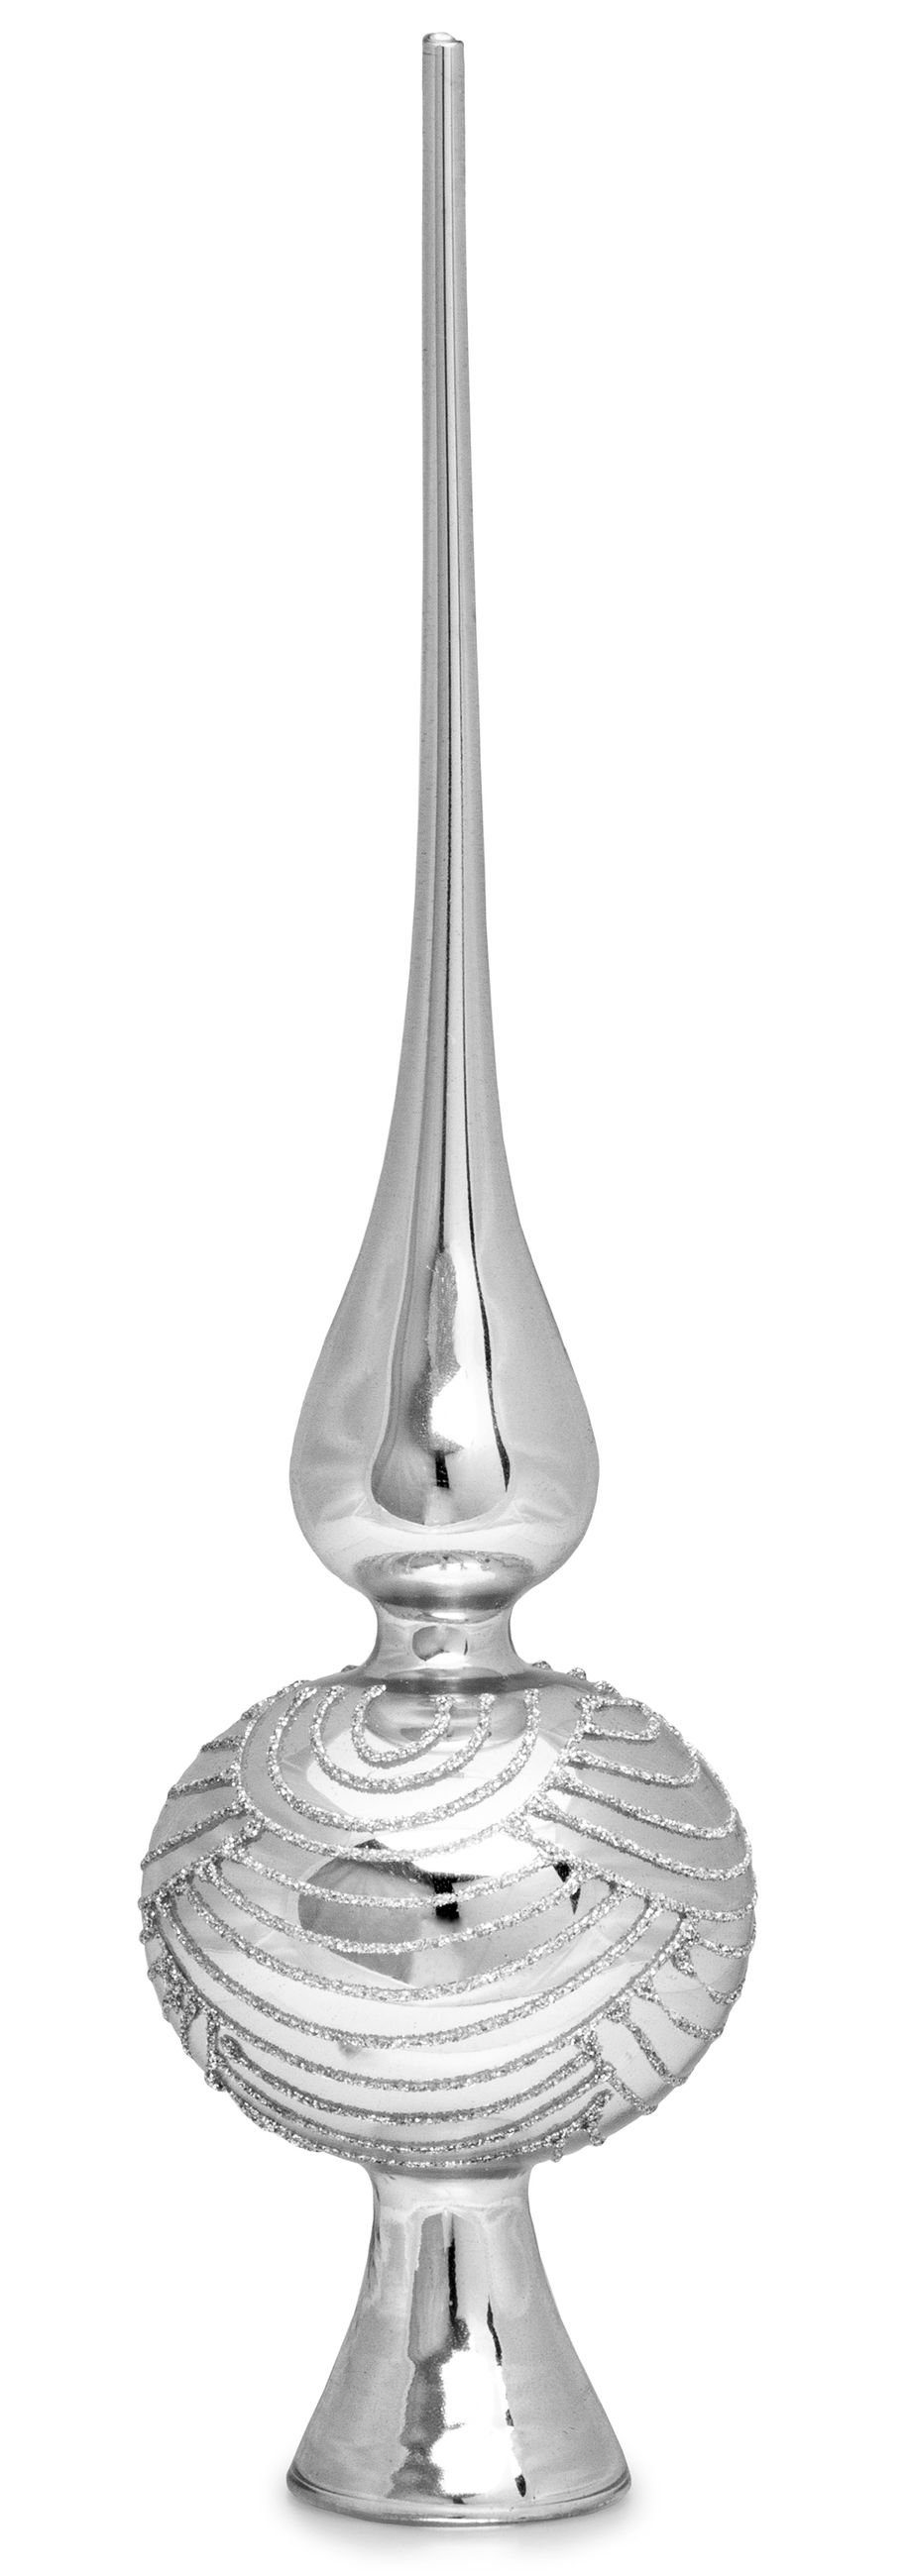 SIKORA Christbaumspitze SP6 Highlights Christbaumspitze aus Glas mit Glitzer Verzierung 2 Größen Silber | Weihnachtsbaumspitzen